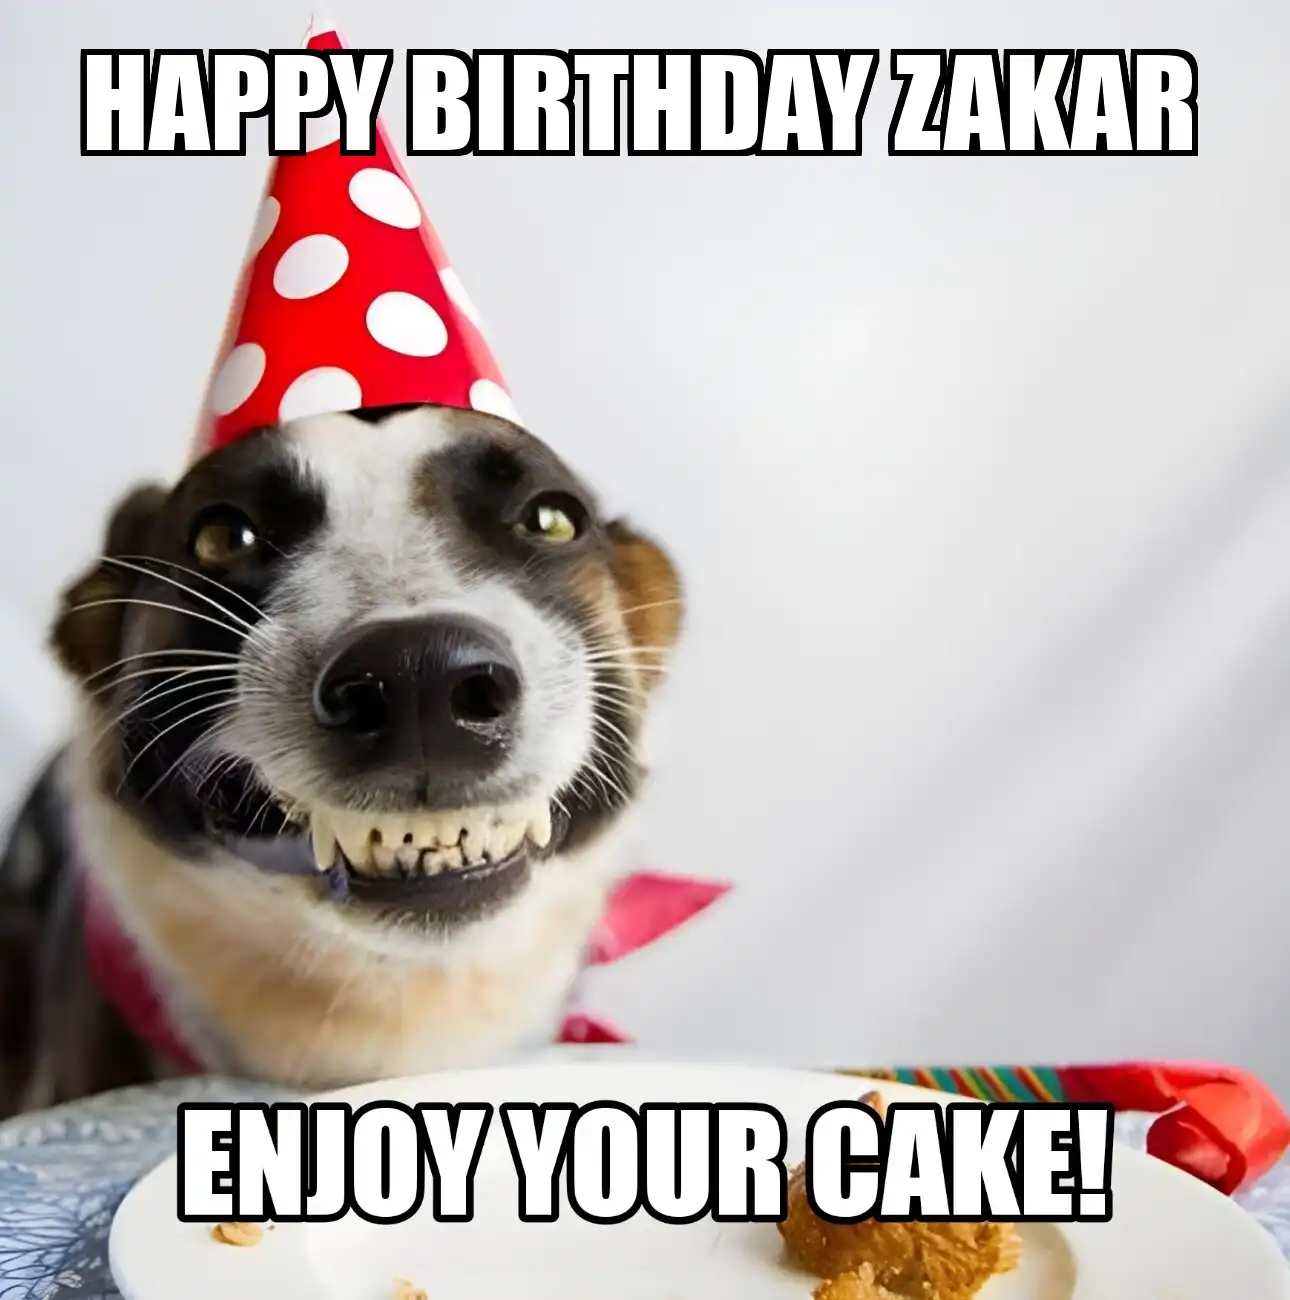 Happy Birthday Zakar Enjoy Your Cake Dog Meme